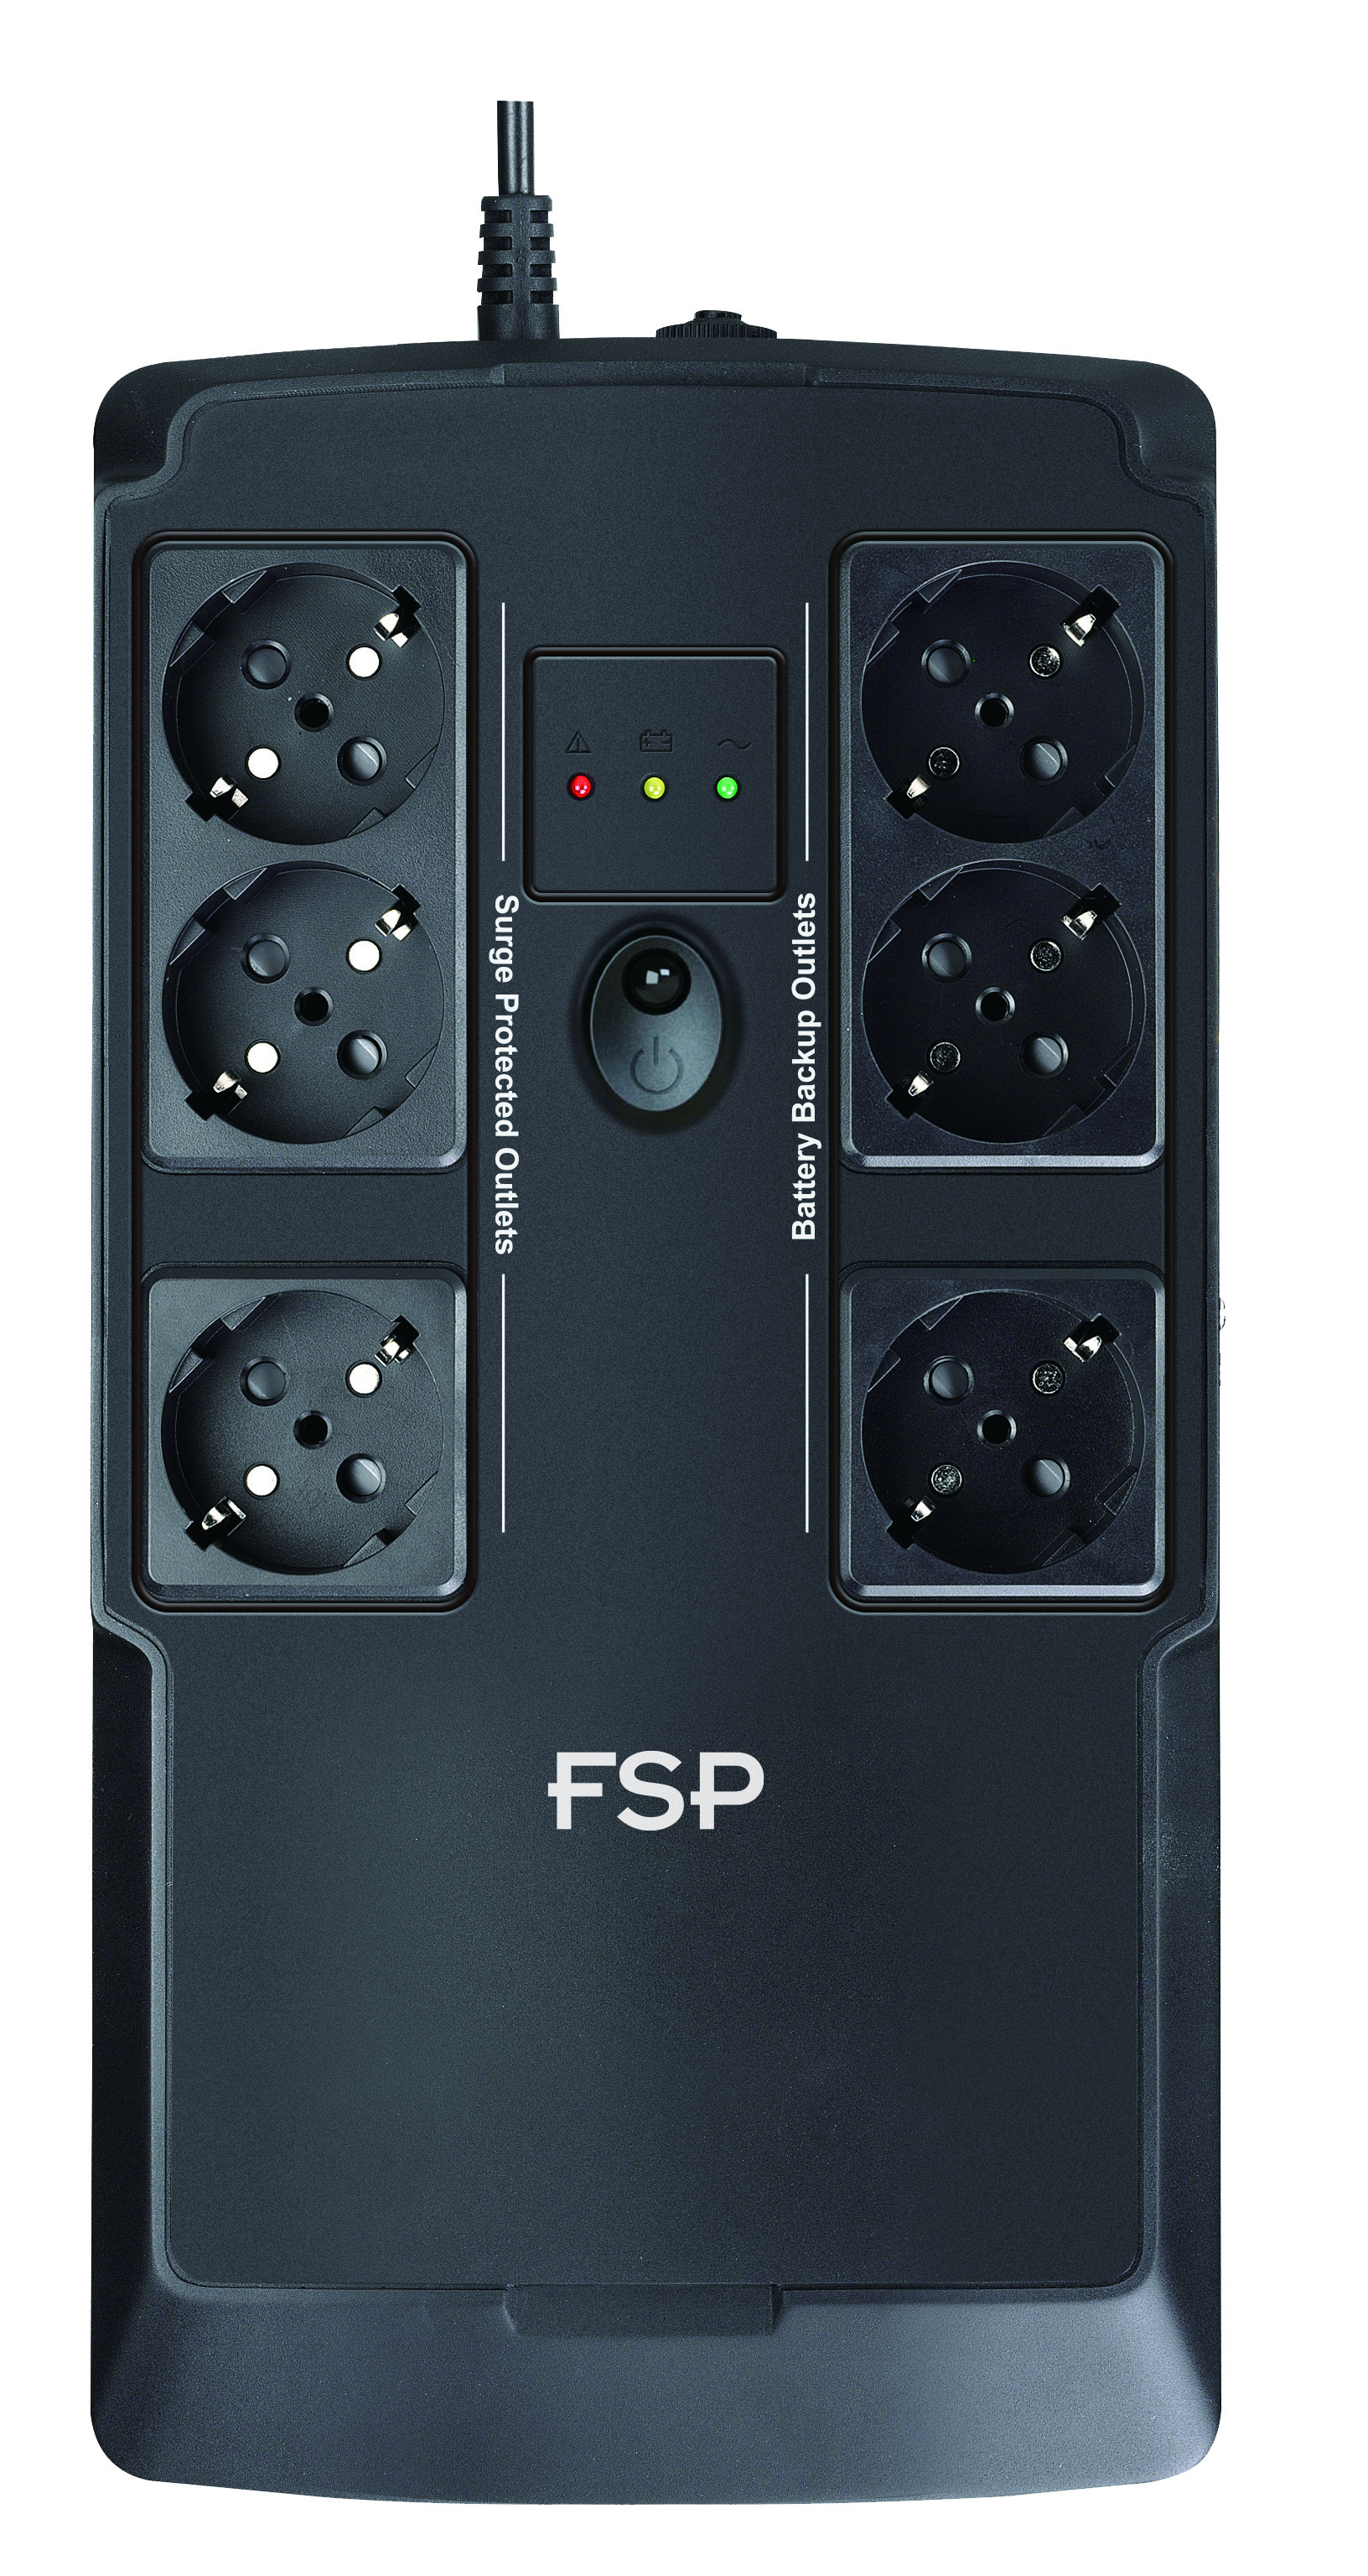 Obrázek FSP UPS NanoFit 600, 600 VA / 360 W, 2xUSB power, LED, offline